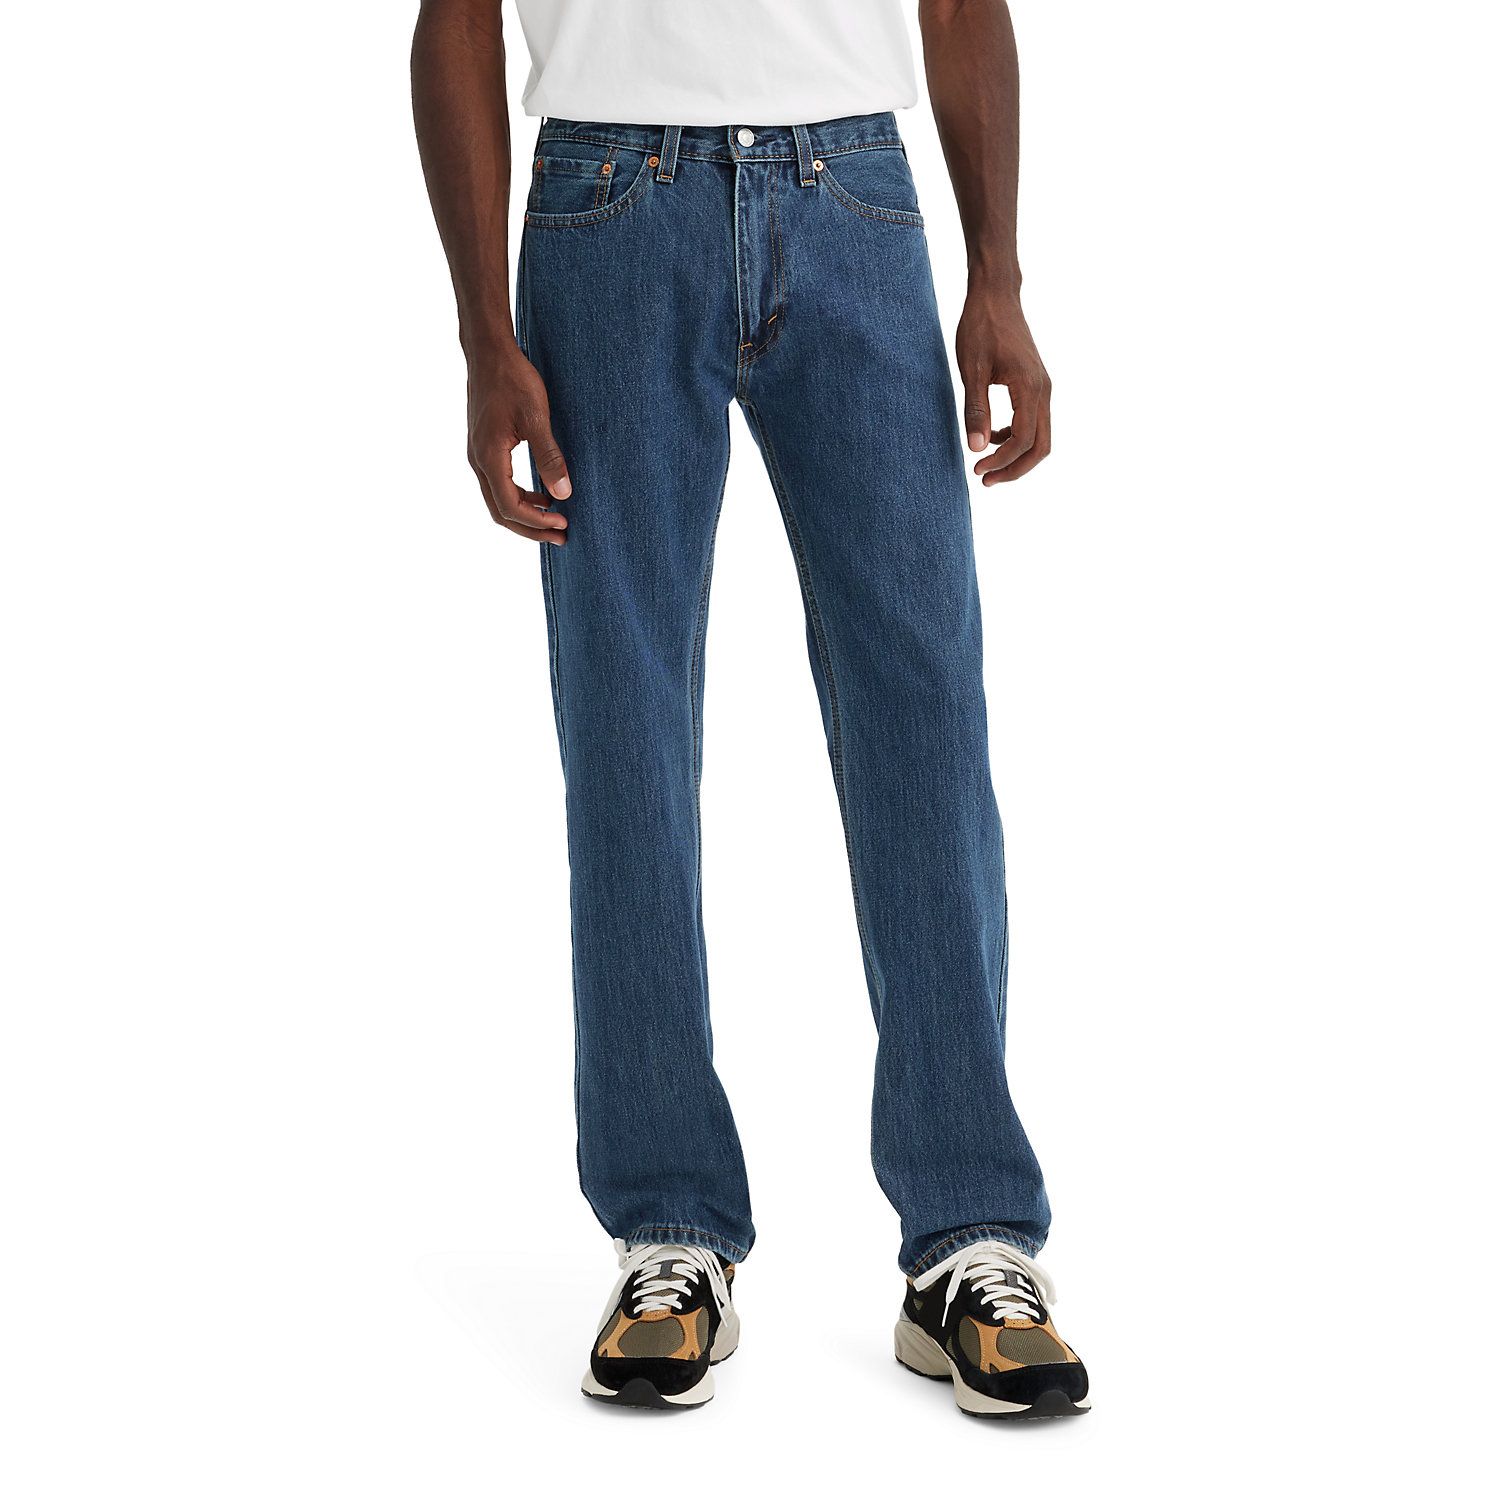 levis 550 jeans mens